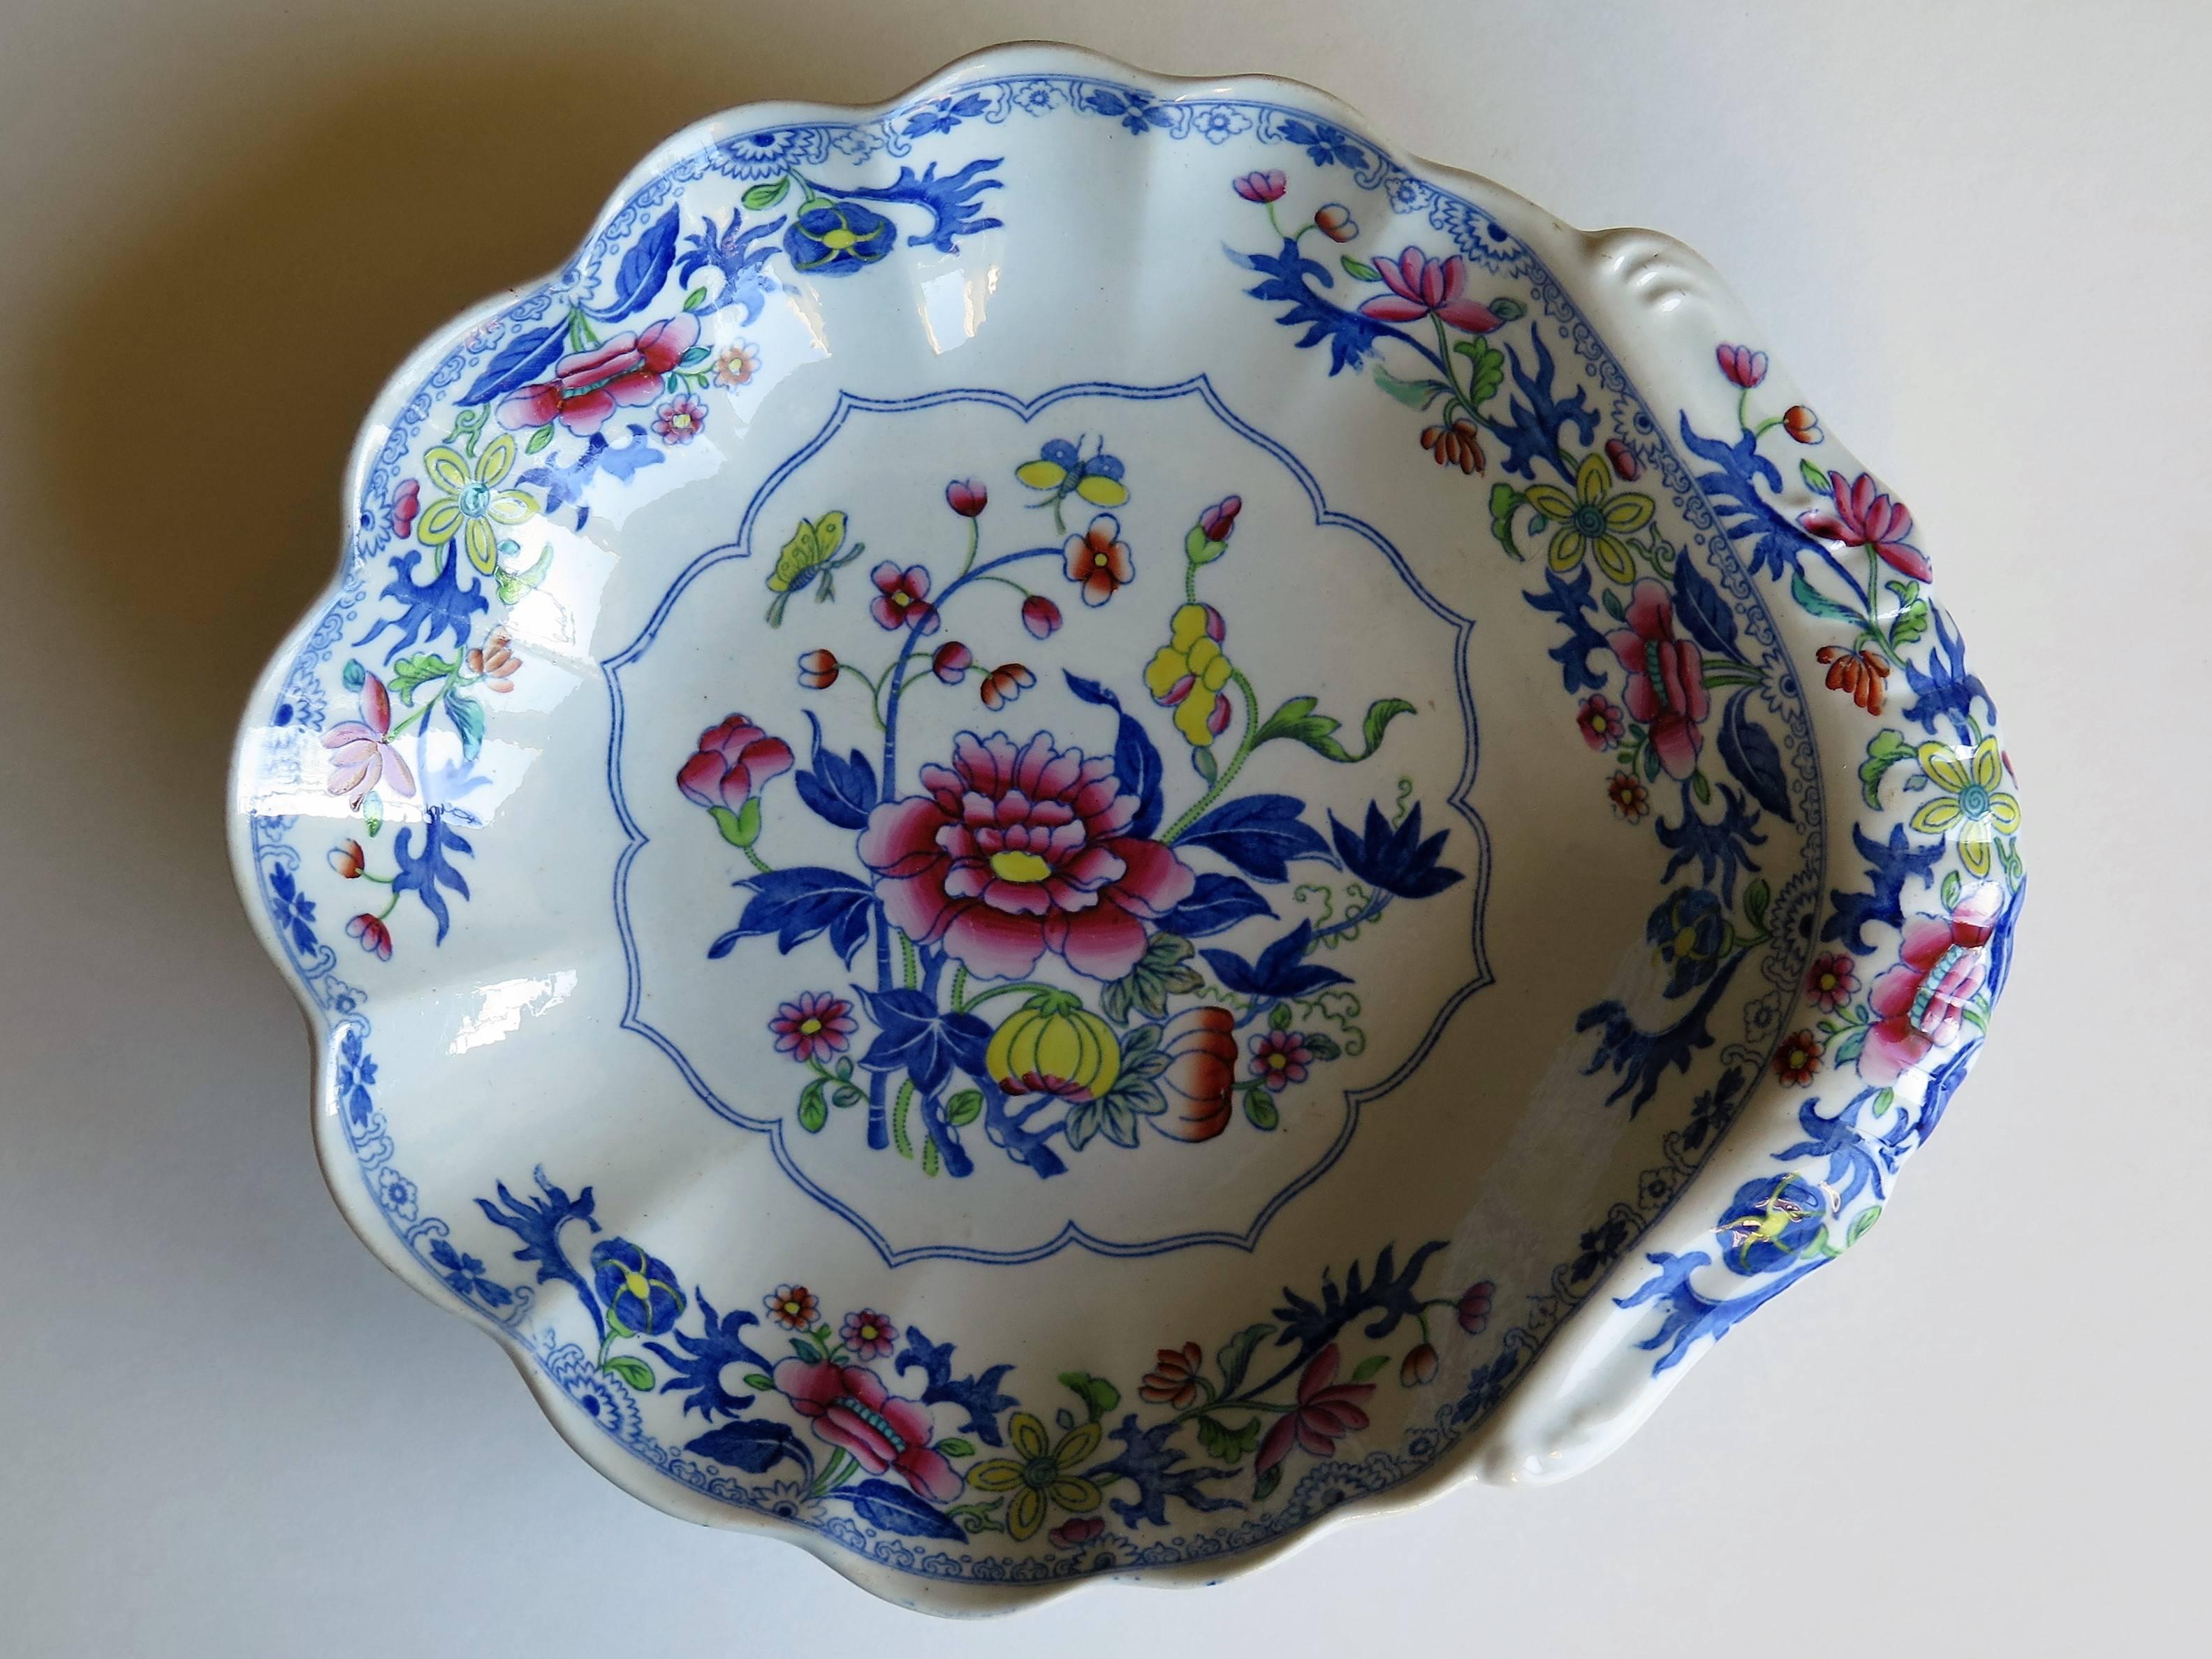 Il s'agit d'un plat à dessert en porcelaine de pierre (poterie Ironstone) du début du XIXe siècle, avec une forme de coquille cannelée, produit par Spode et datant de la période George 111, vers 1820.

Il est décoré de l'un des motifs floraux